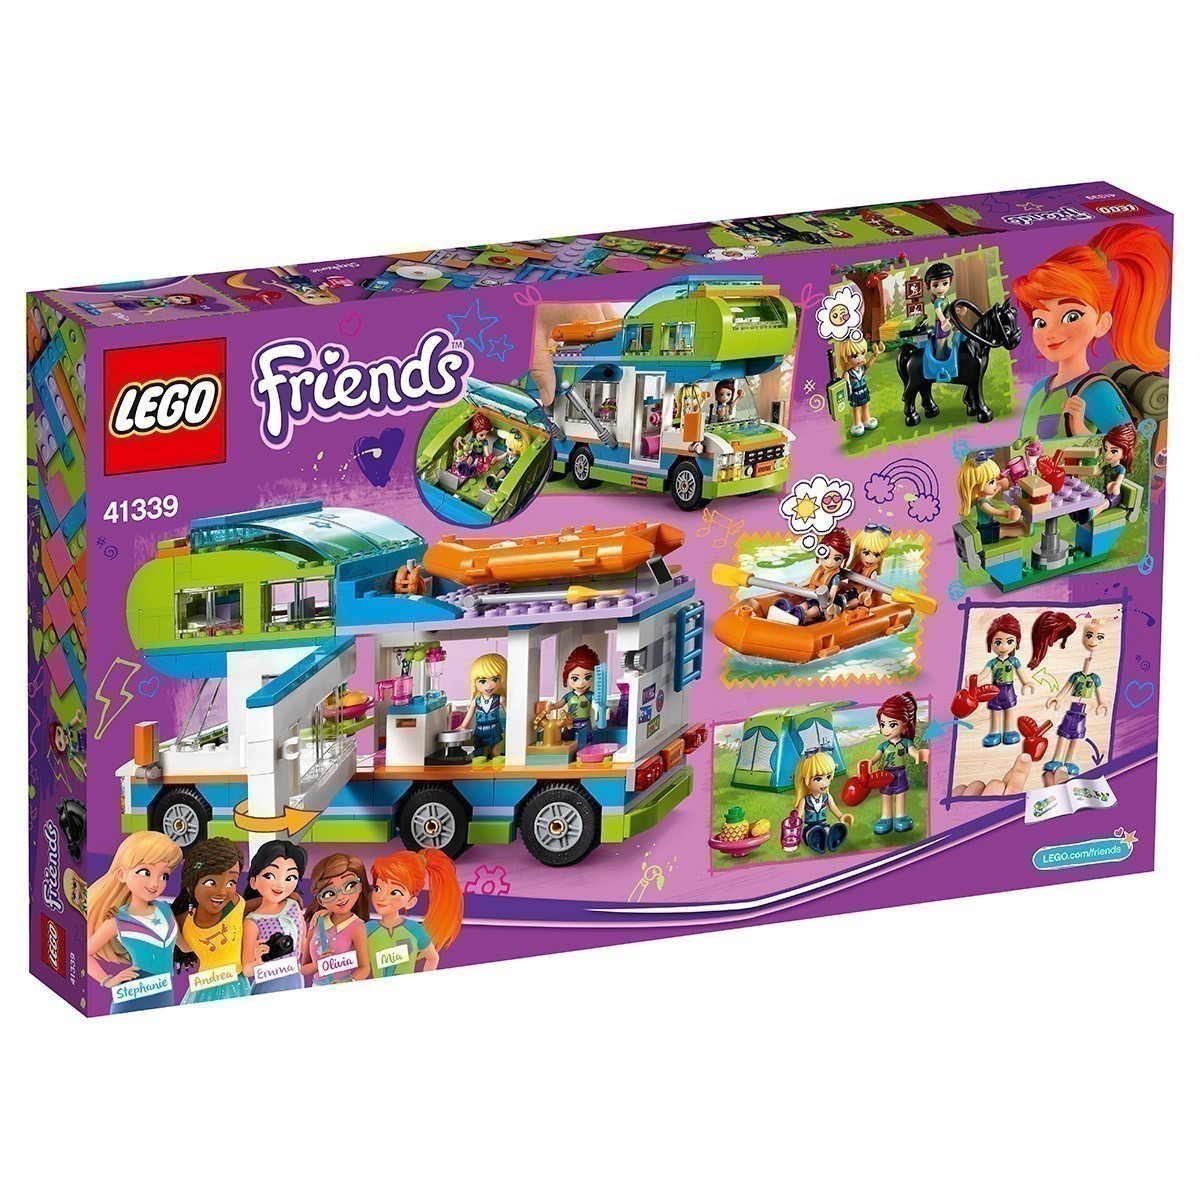 LEGO Friends 41339 - Mia's Camper Van